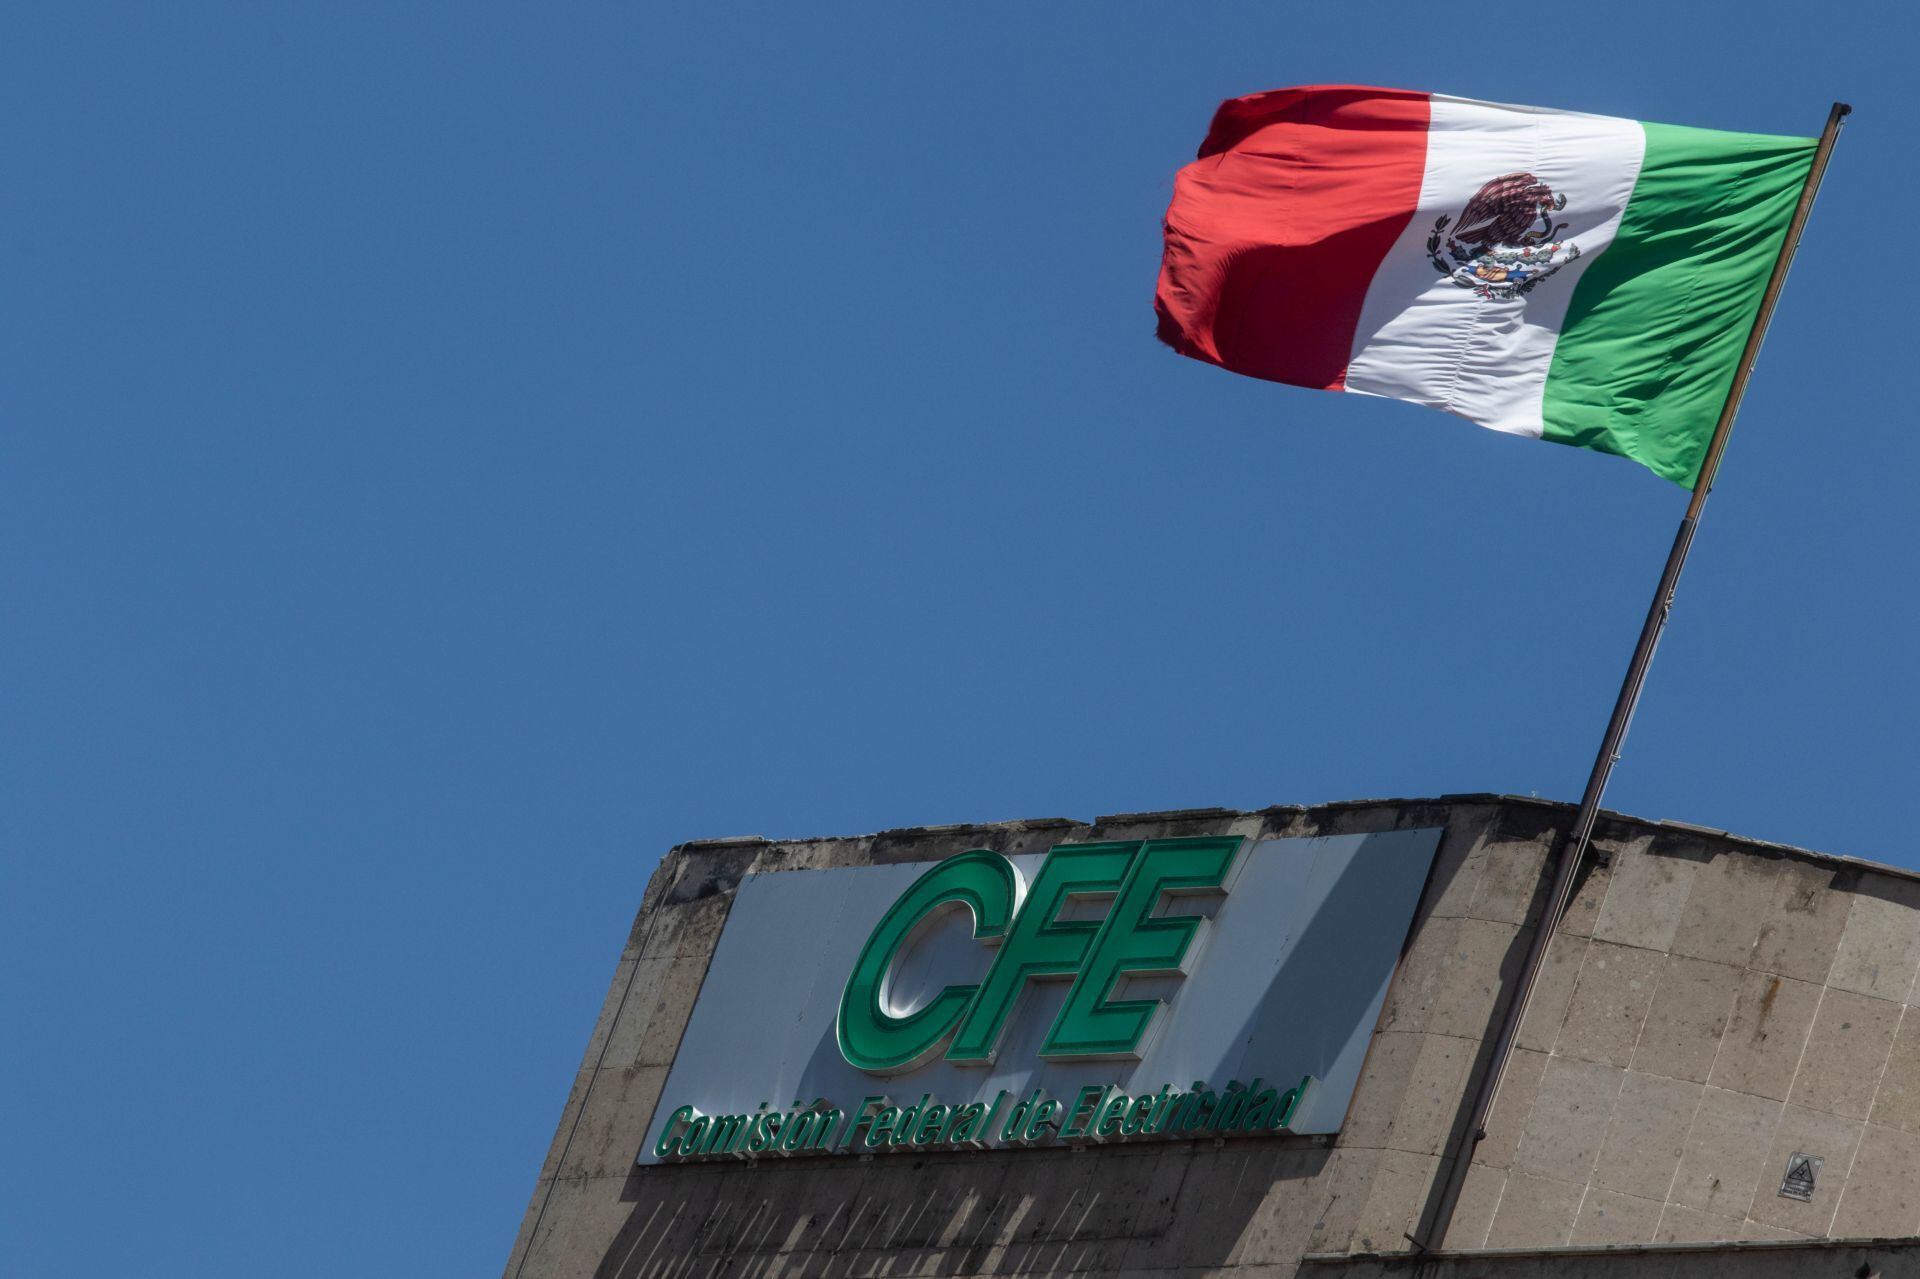 Segunda ola de calor pone en alerta al Sistema Electrico Nacional: México reporta apagones